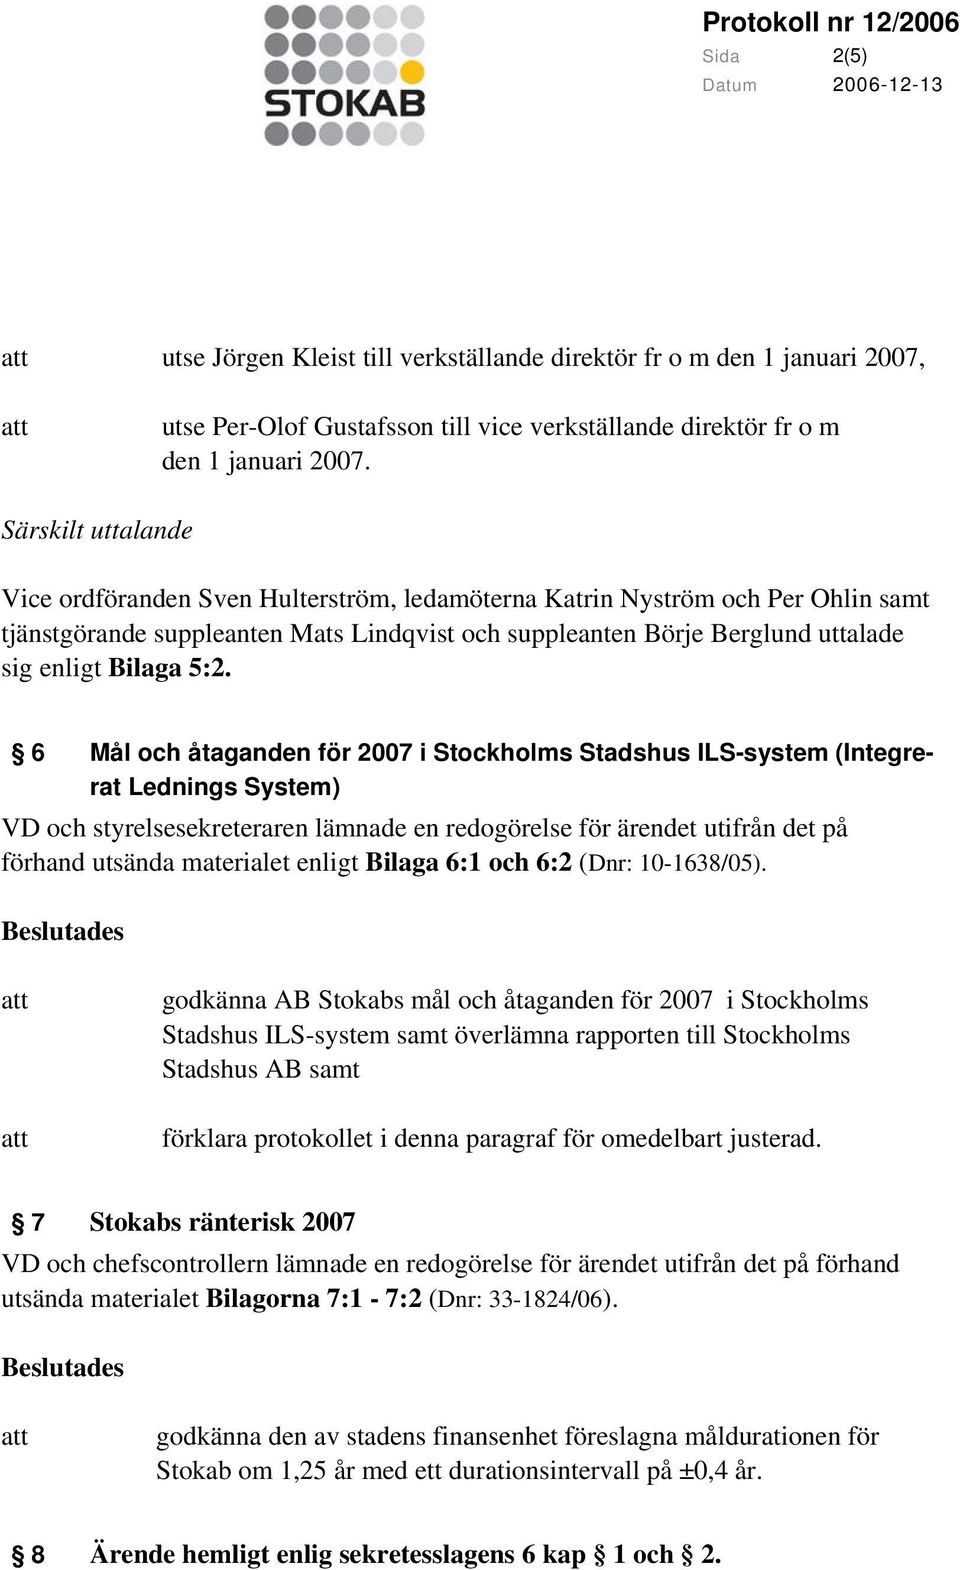 5:2. 6 Mål och åtaganden för 2007 i Stockholms Stadshus ILS-system (Integrerat Lednings System) VD och styrelsesekreteraren lämnade en redogörelse för ärendet utifrån det på förhand utsända